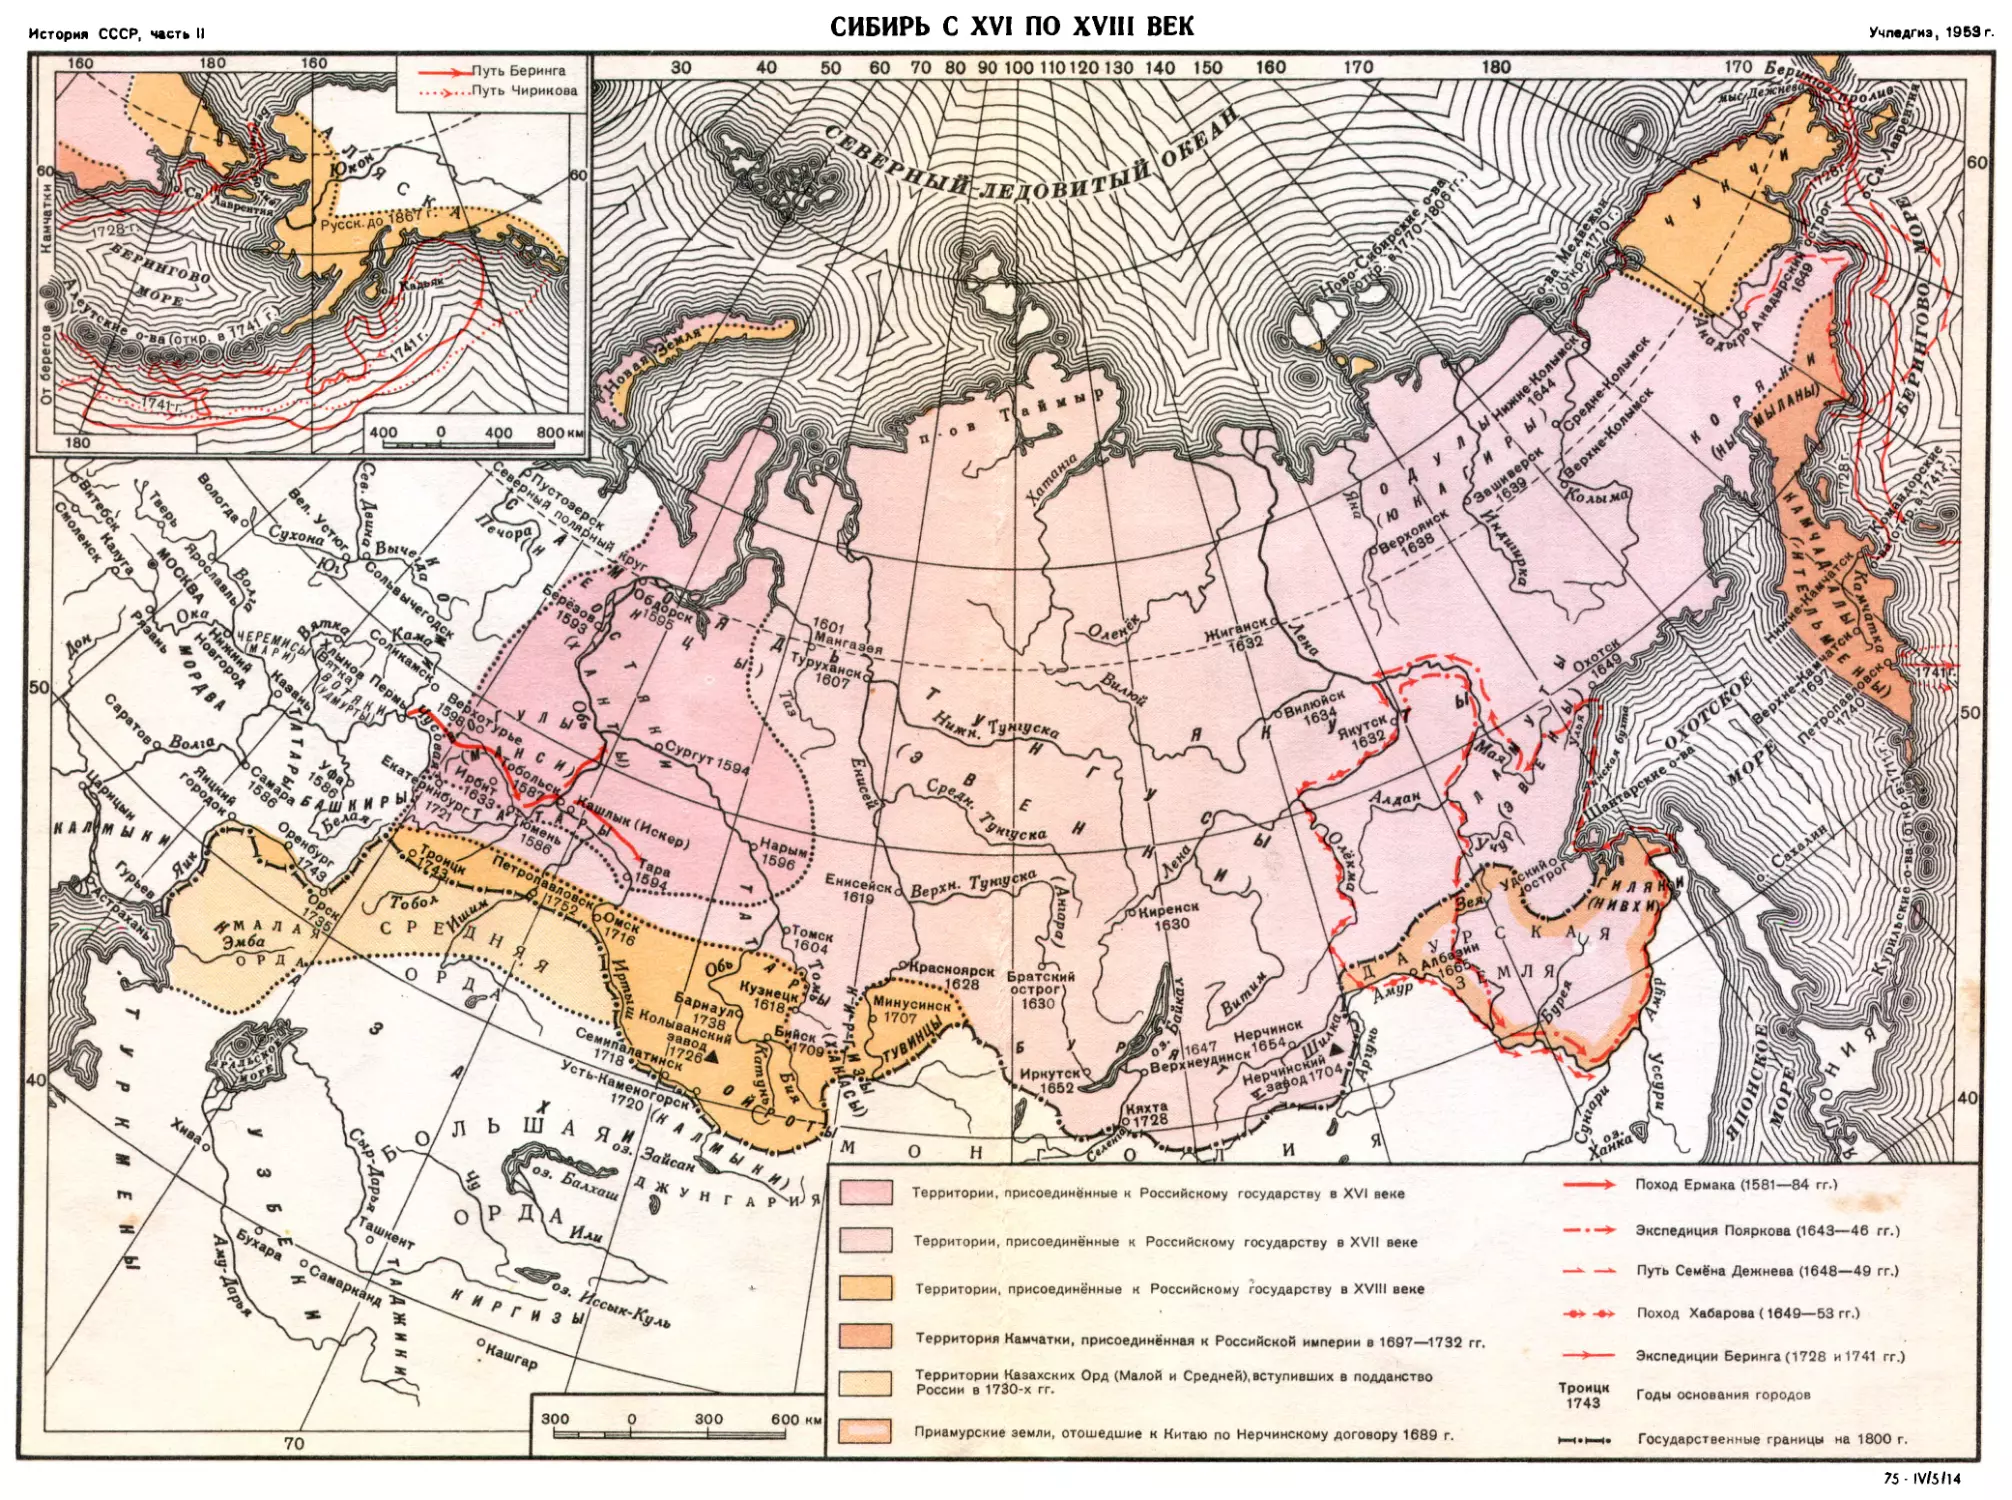 4. Сибирь с XVI по XVIII век